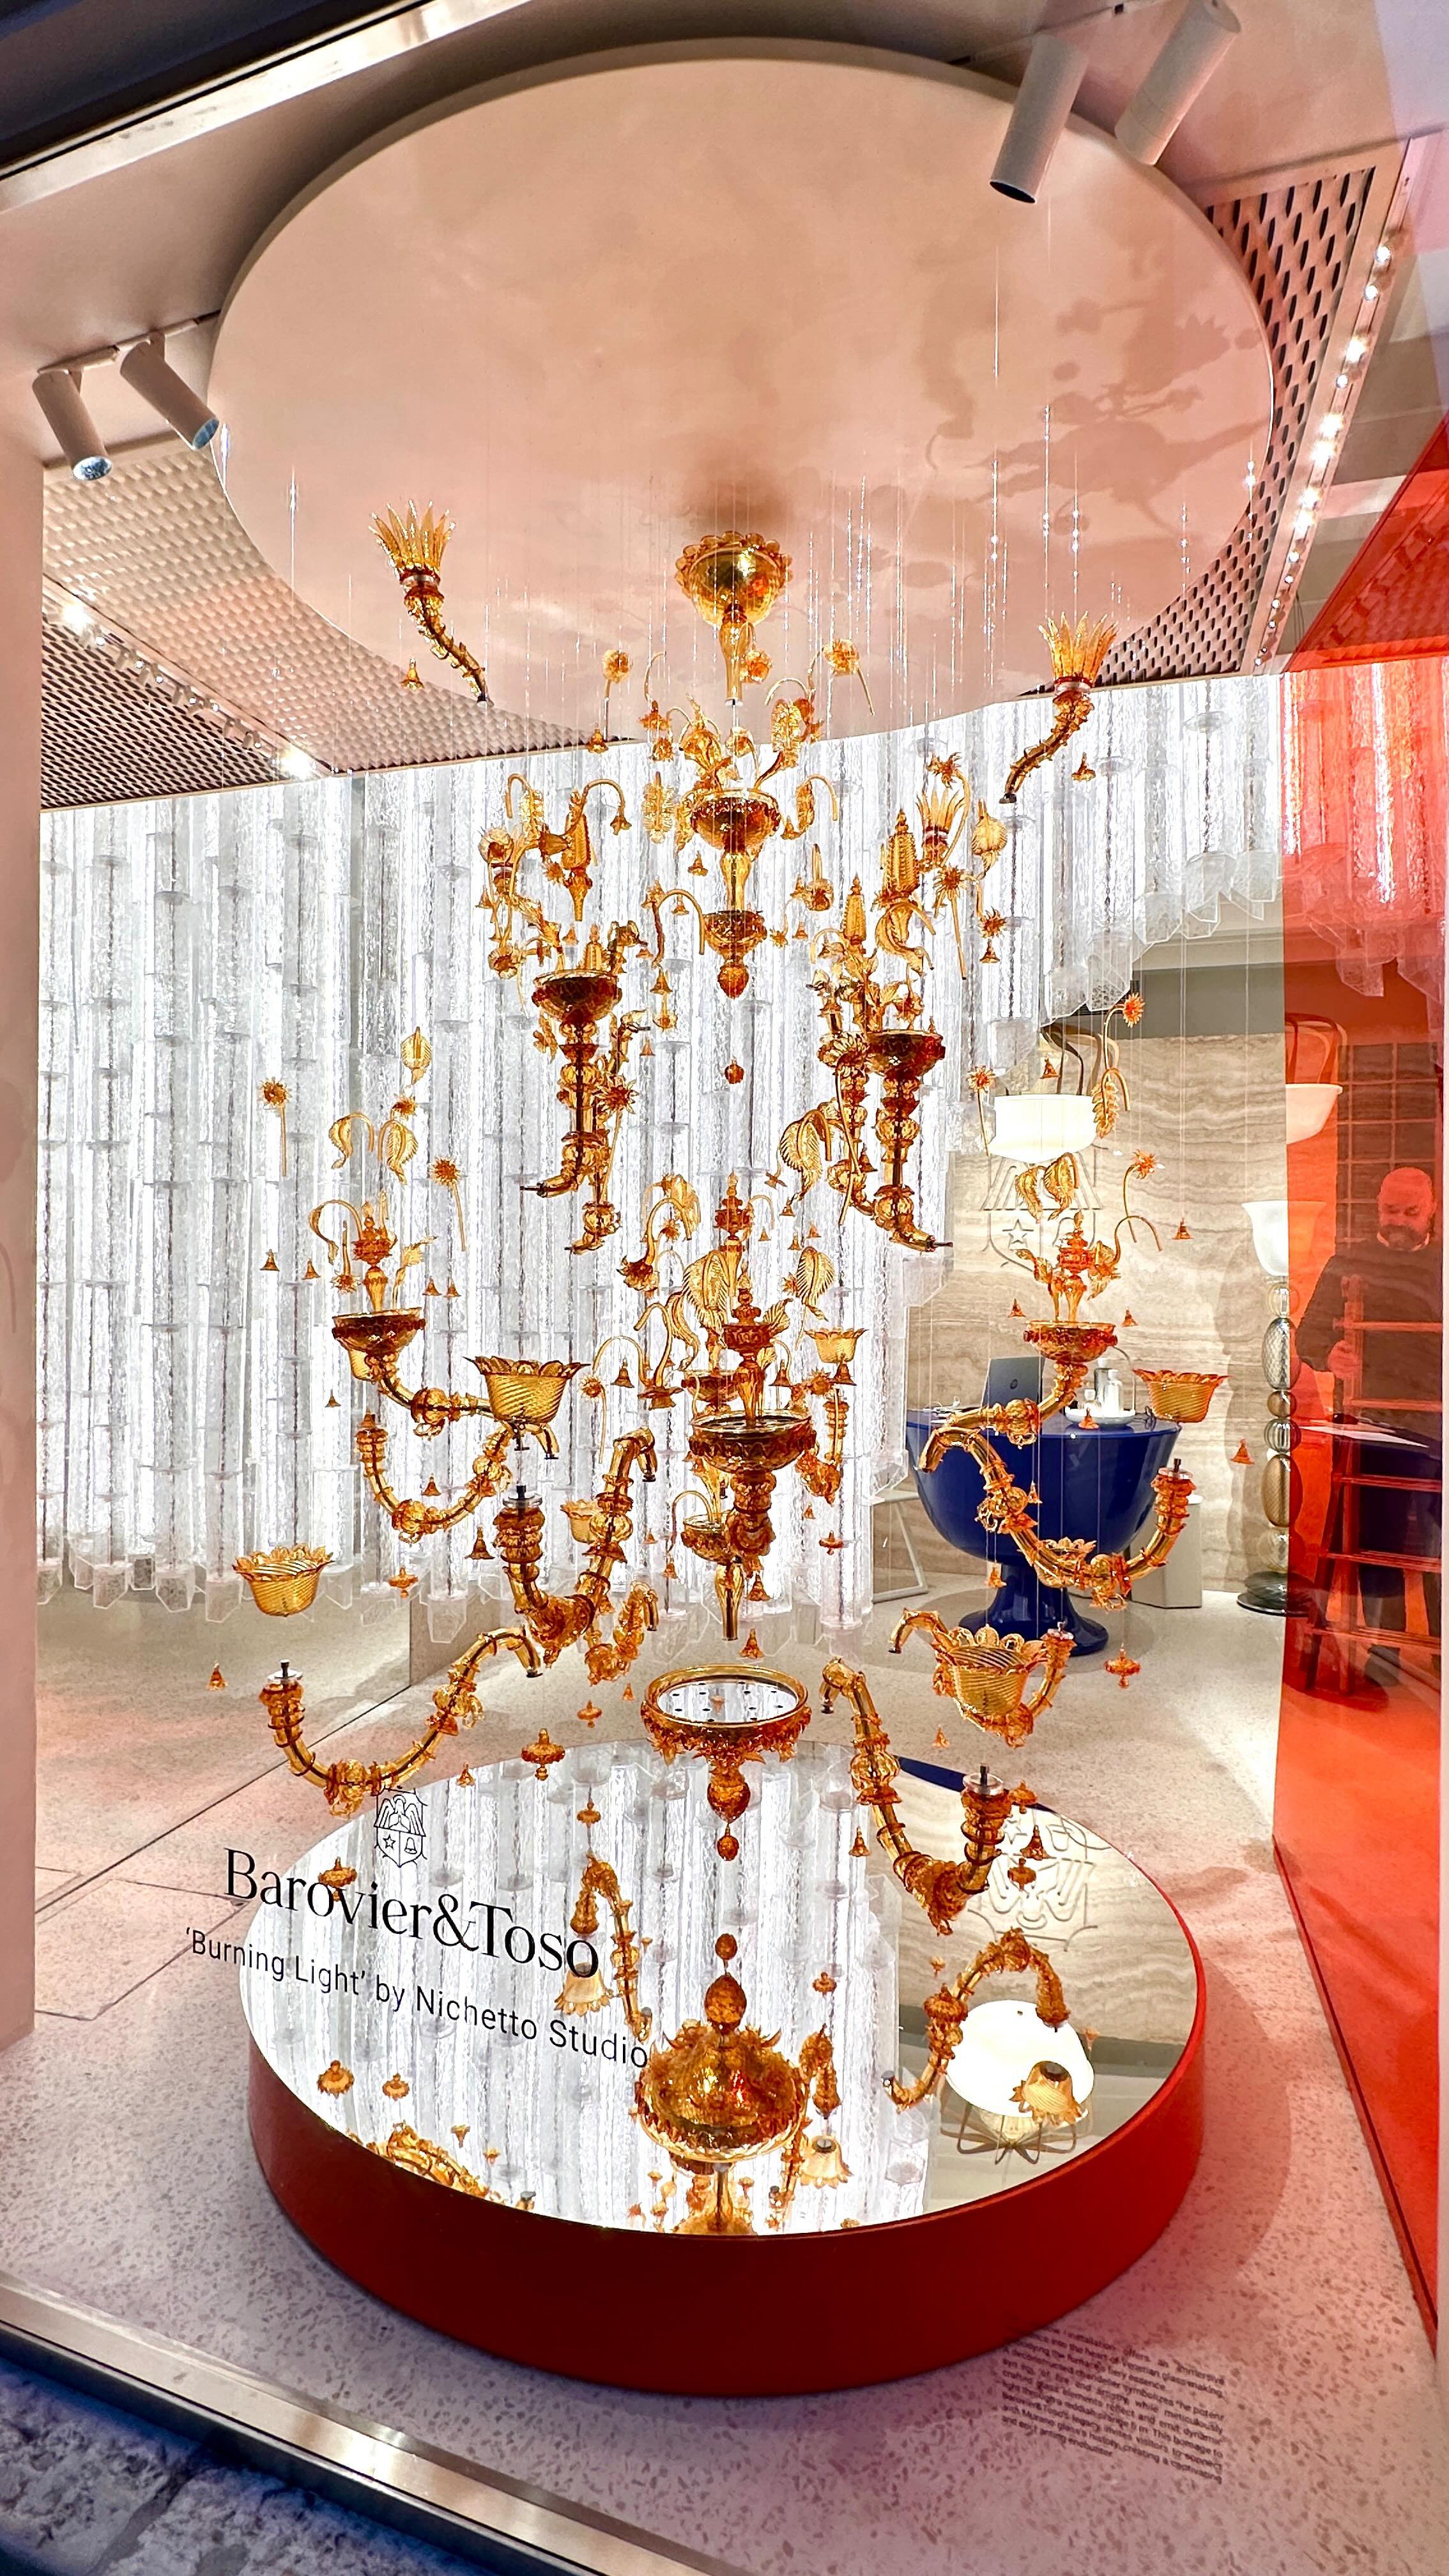 O reinterpretare a clasicelor candelabre venețiene de la @baroviertoso , făcută de @nichettostudio . Un exemplu de meșteșug clasic, adus în contemporan.

#venetianglass #venetian #venice #muranoglass #contemporaryart #glass #glassblowing #venicelife #venicestyle #venezia